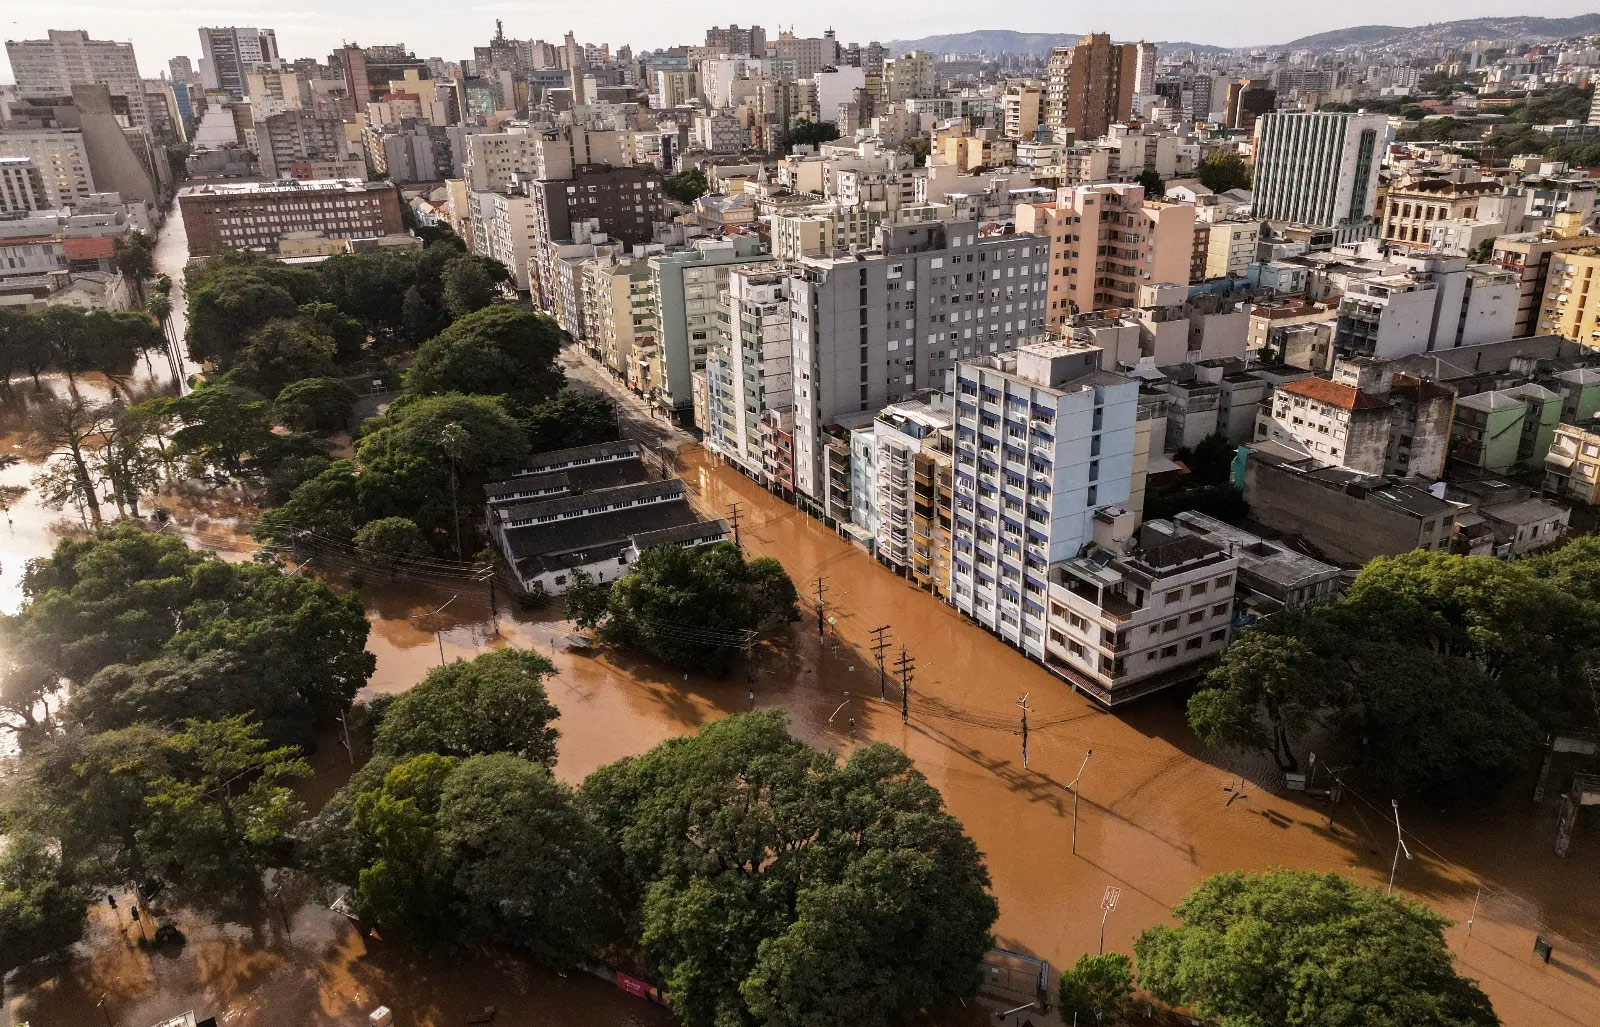 Aerial view of a flooded area of Porto Alegre, Rio Grande do Sul state, Brazil